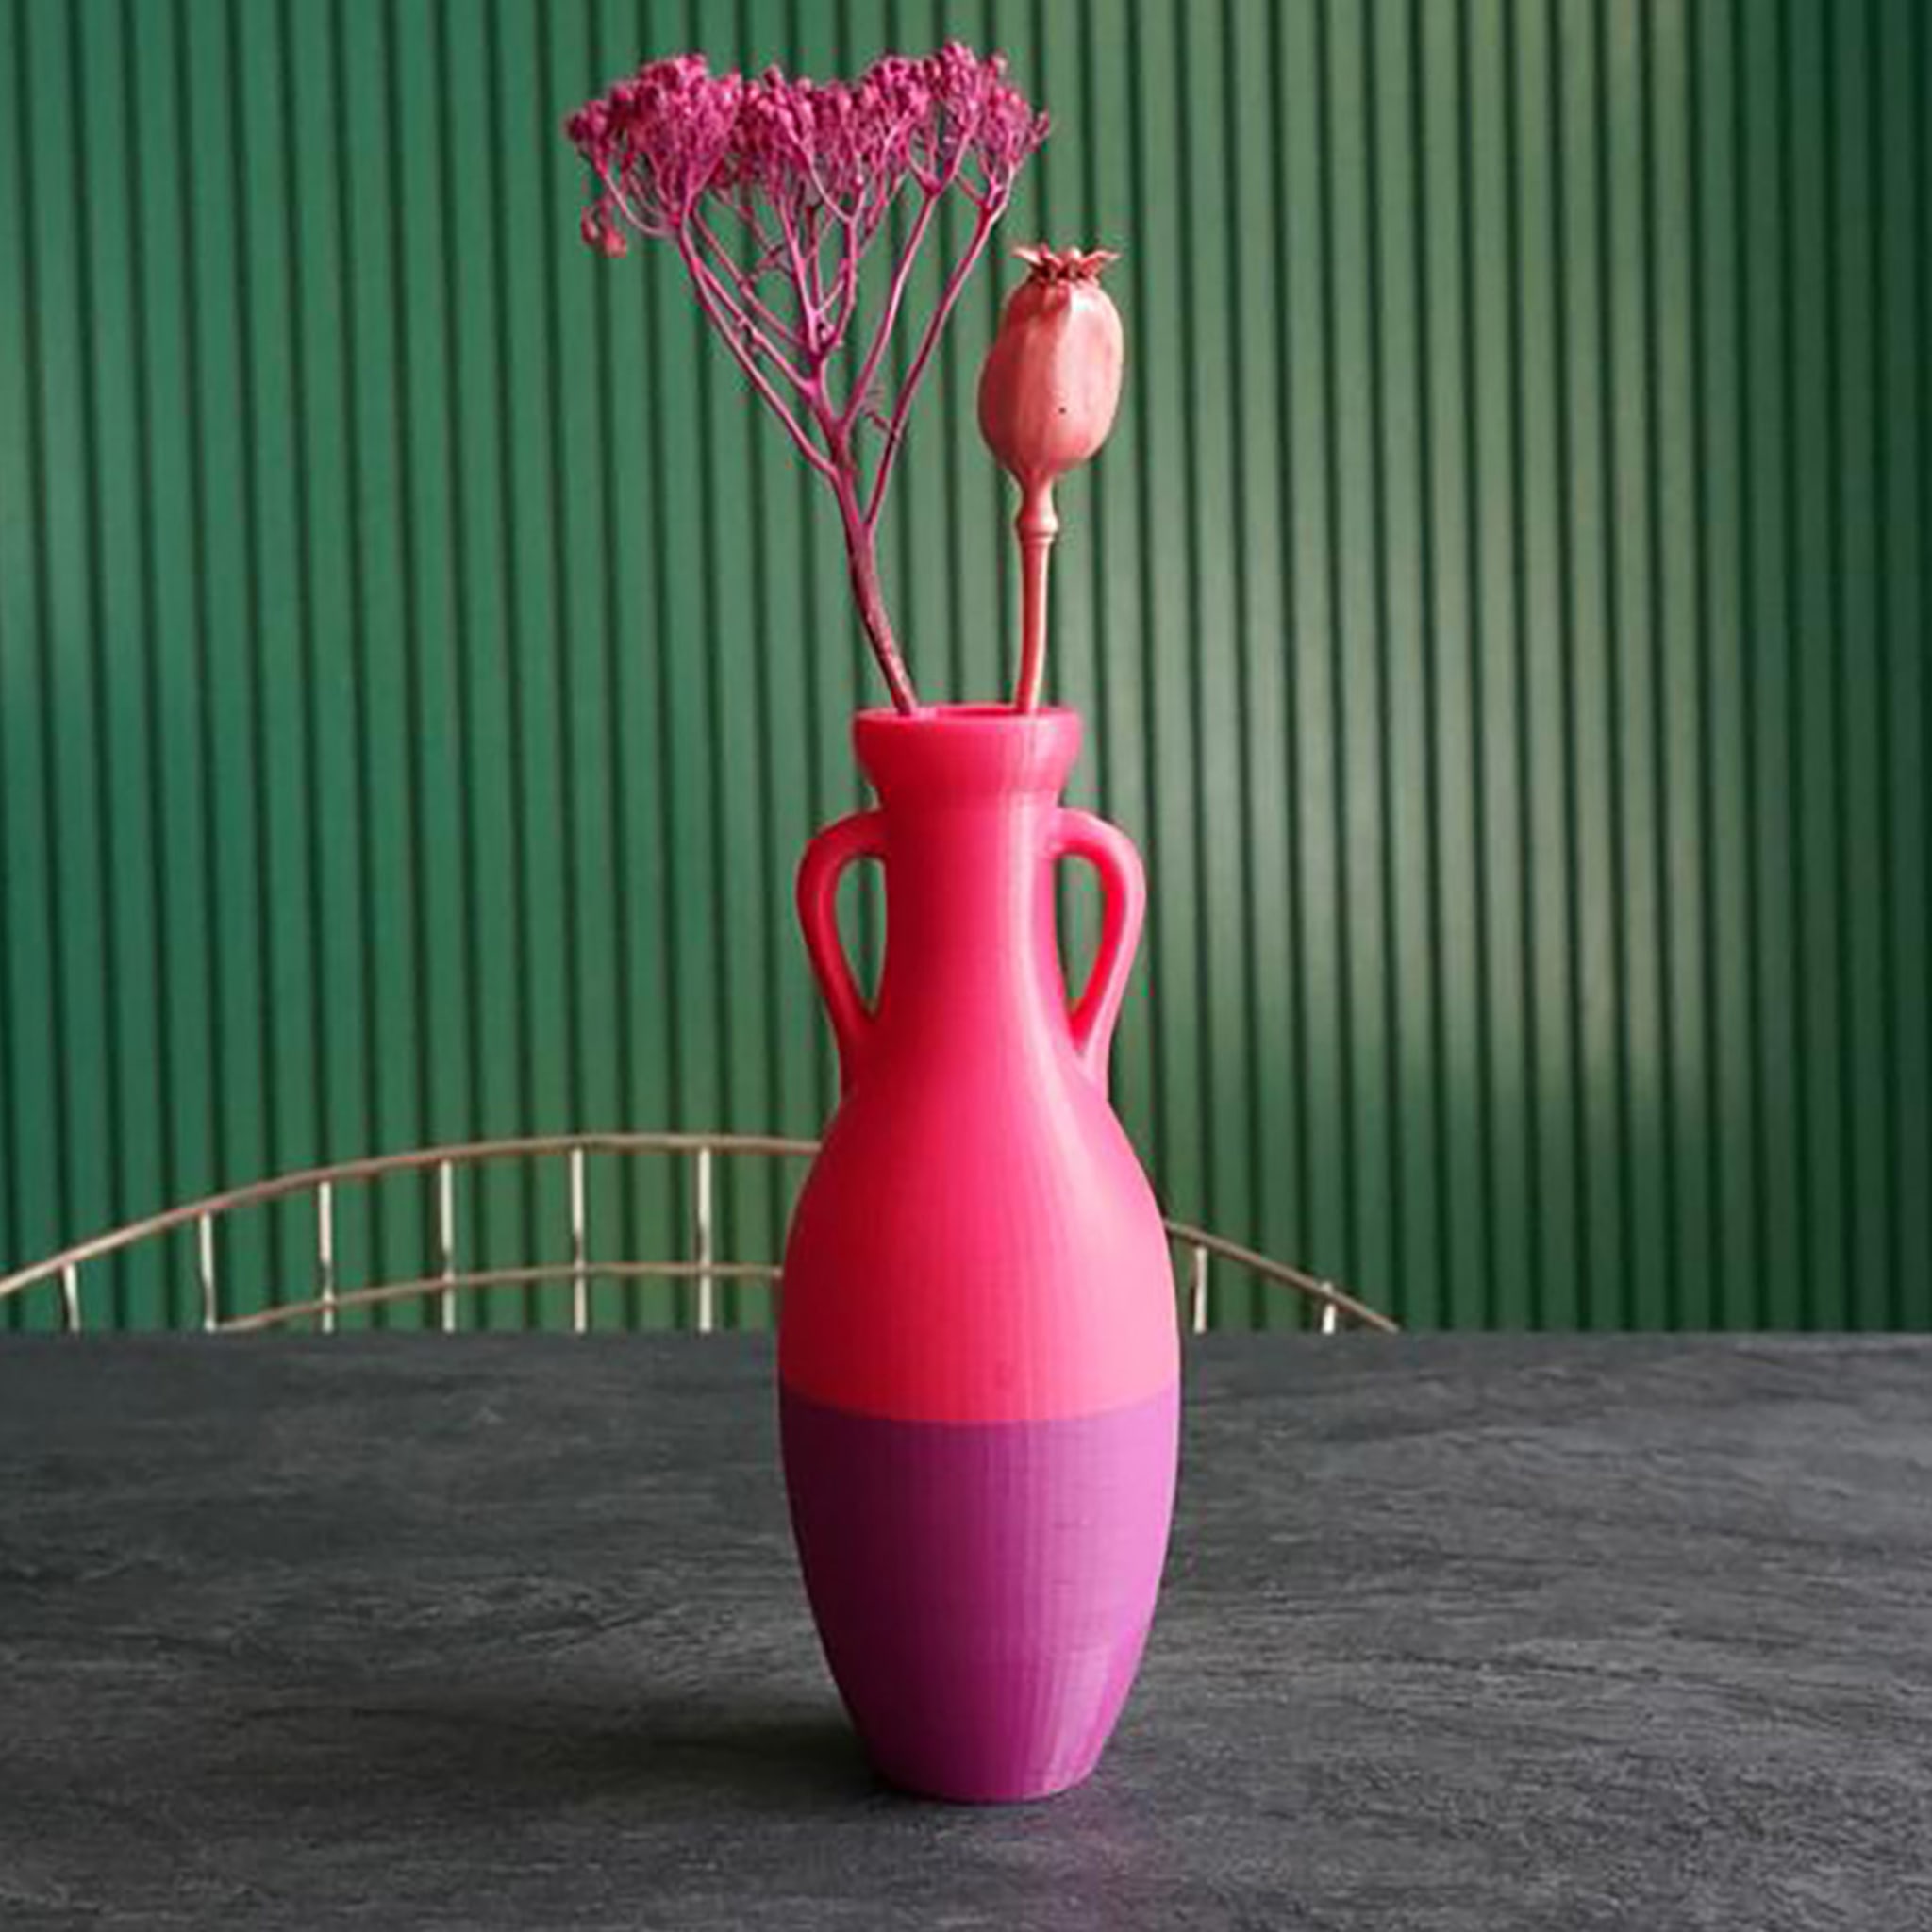 GIULIO CESARE Medium Special Pot Vase - Alternative view 1